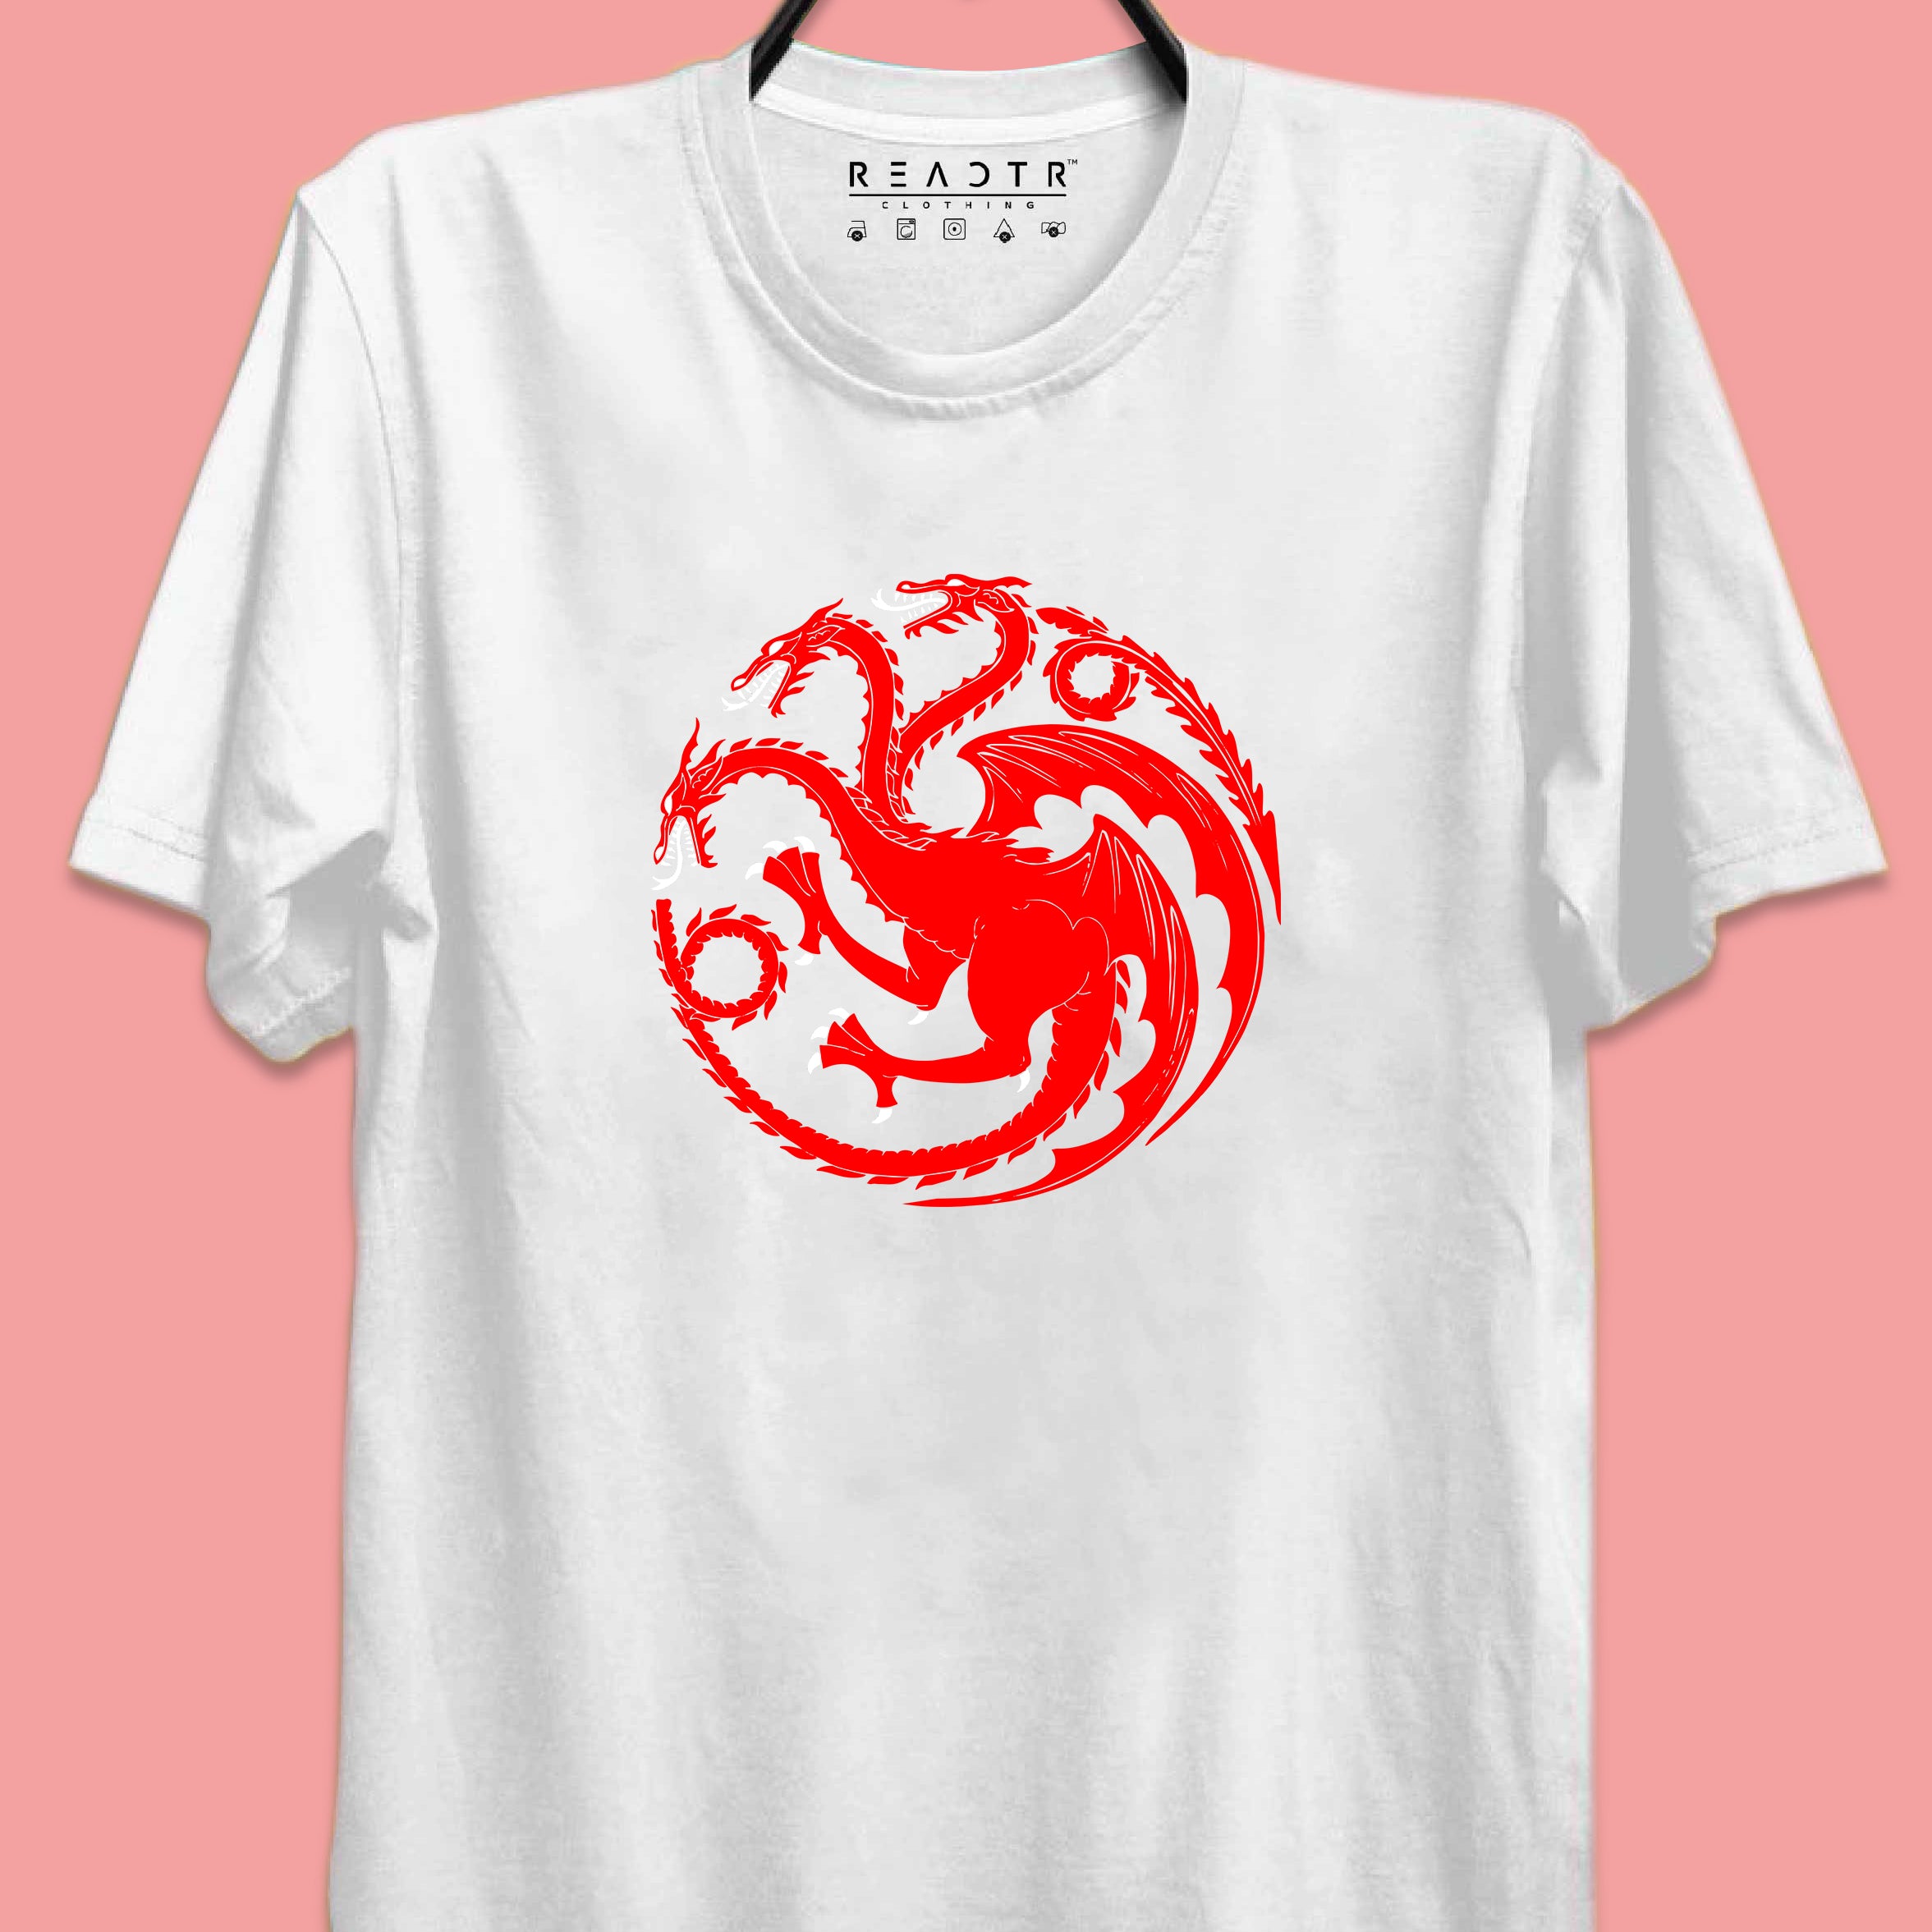 Targaryen GOT Reactr Tshirts For Men - Eyewearlabs